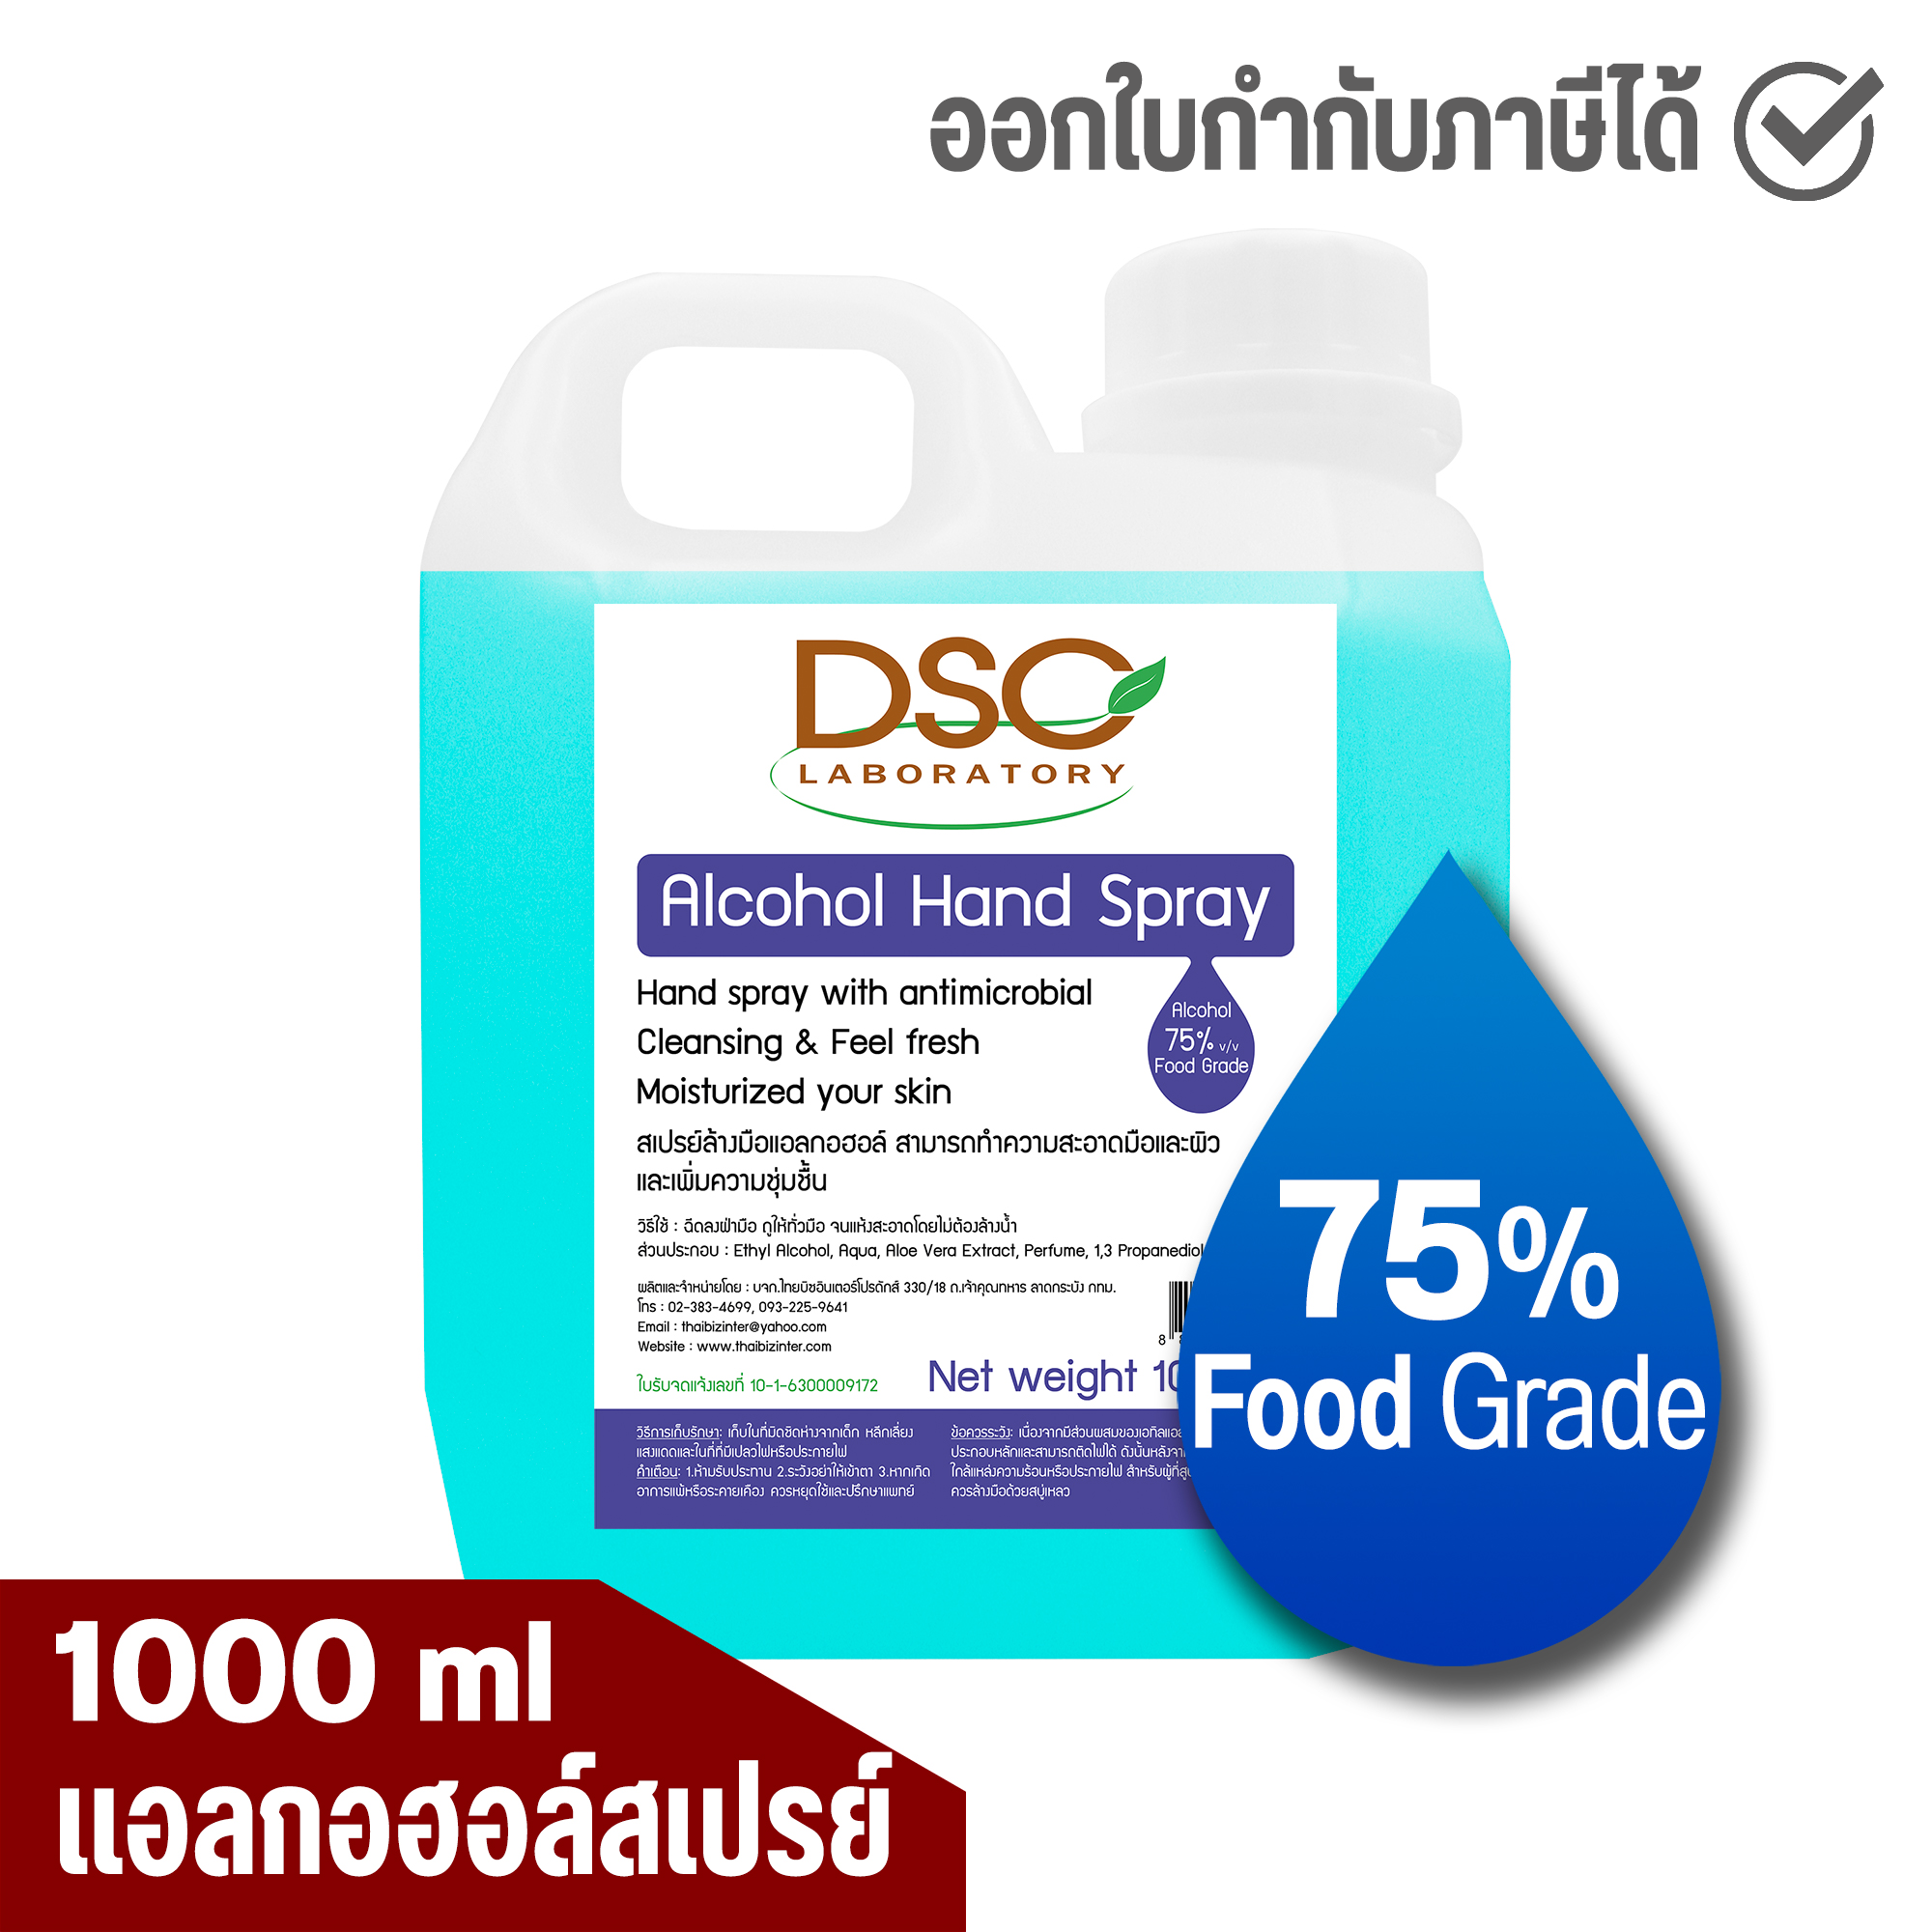 DSC แอลกอฮอล์สเปรย์ 1000 มล. แอลกอฮอล์ 75% DSC Alcohol Hand Spray 1000 ml  แอลกอฮอล์น้ำ แกลลอน